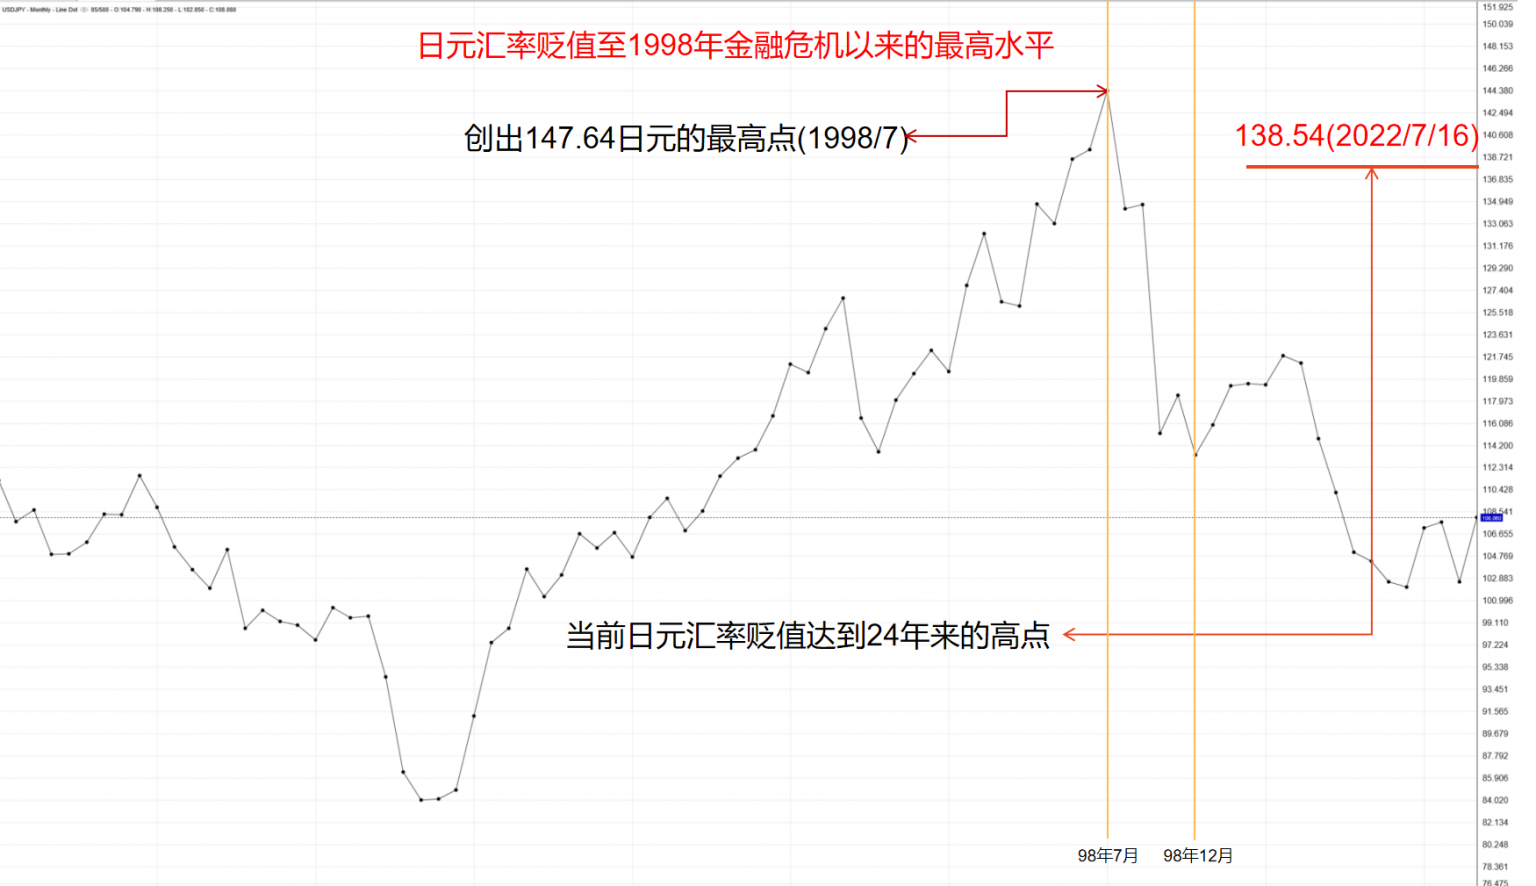 日元大幅贬值或导致经济倒退30年，但不愿加息，为什么？ - 知乎